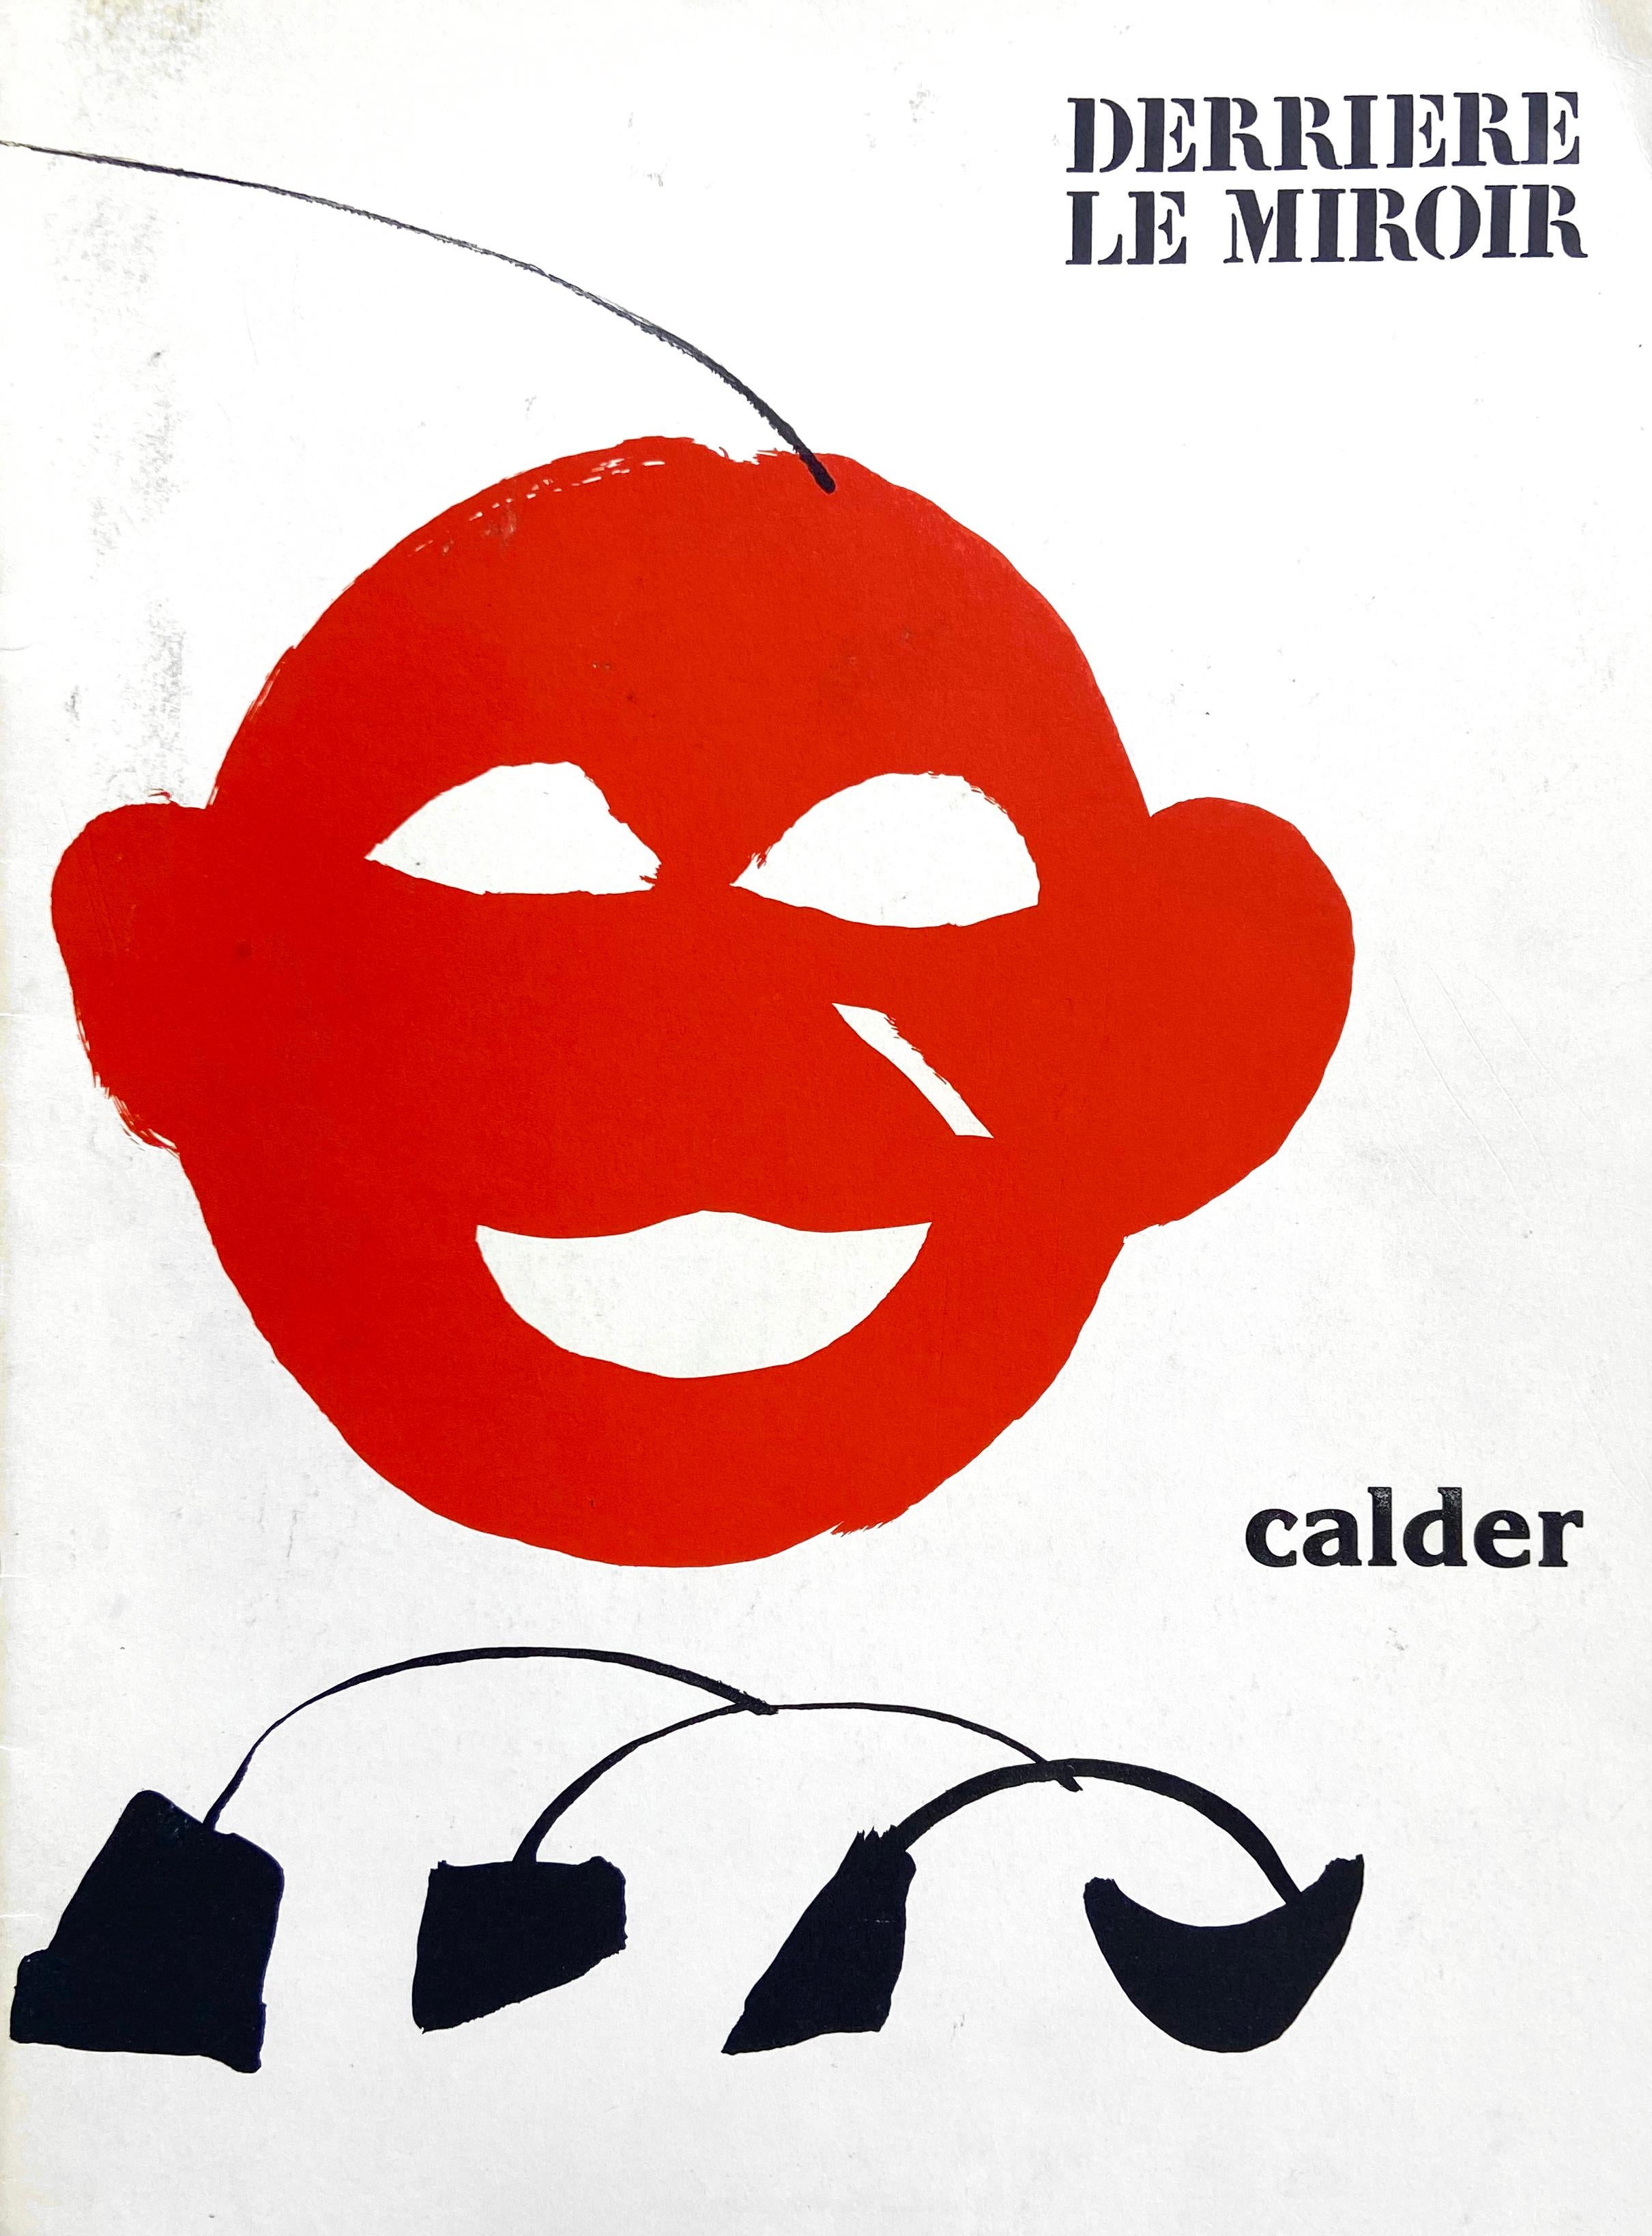 1970's Alexander Calder lithographic cover (Derrière le miroir)